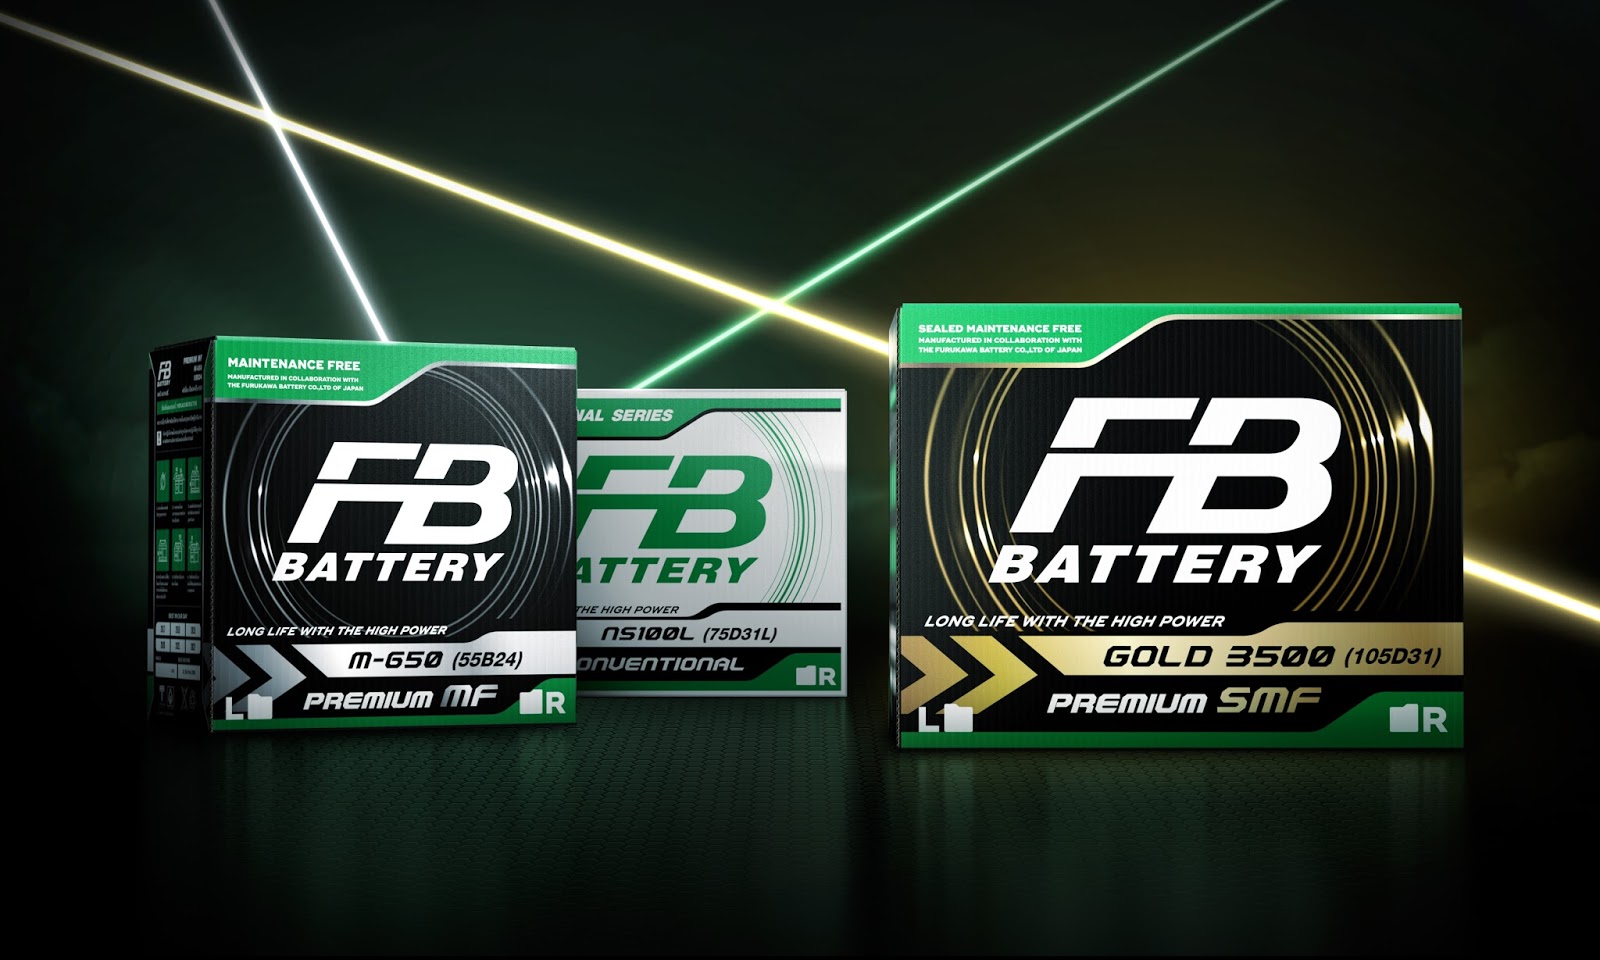 Battery design. Battery Packaging. Furukawa Battery вся линейка. Battery Box Design.